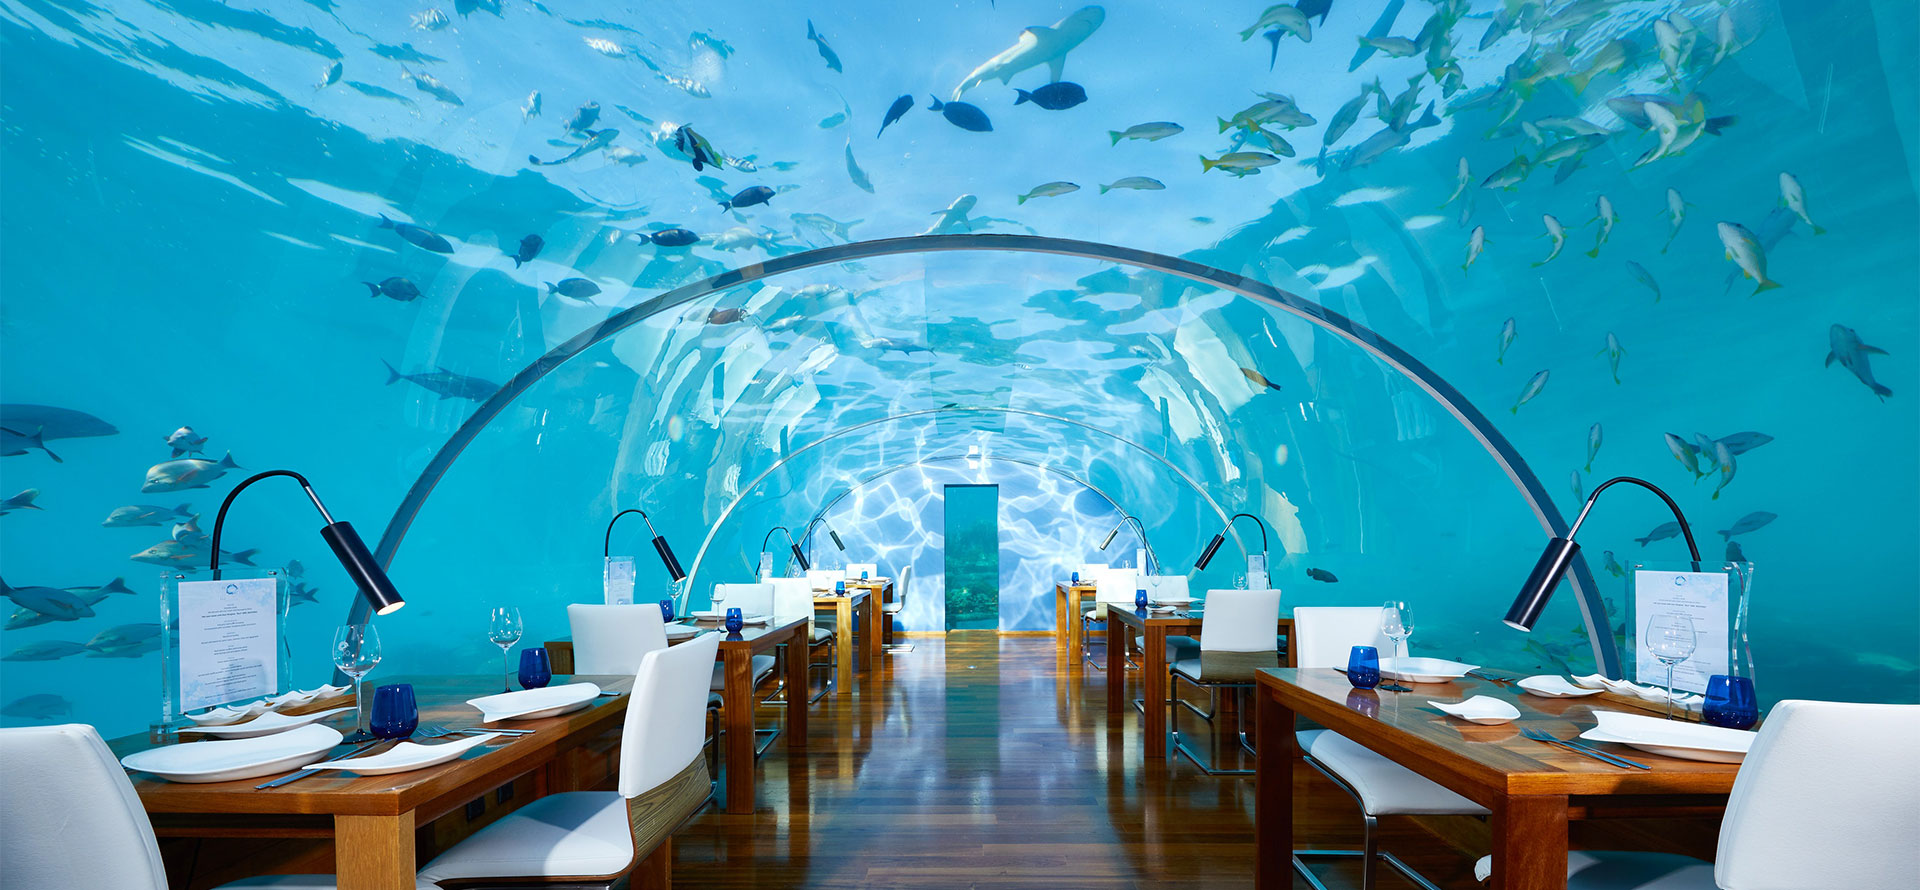 Maldives underwater hotels restaurant.